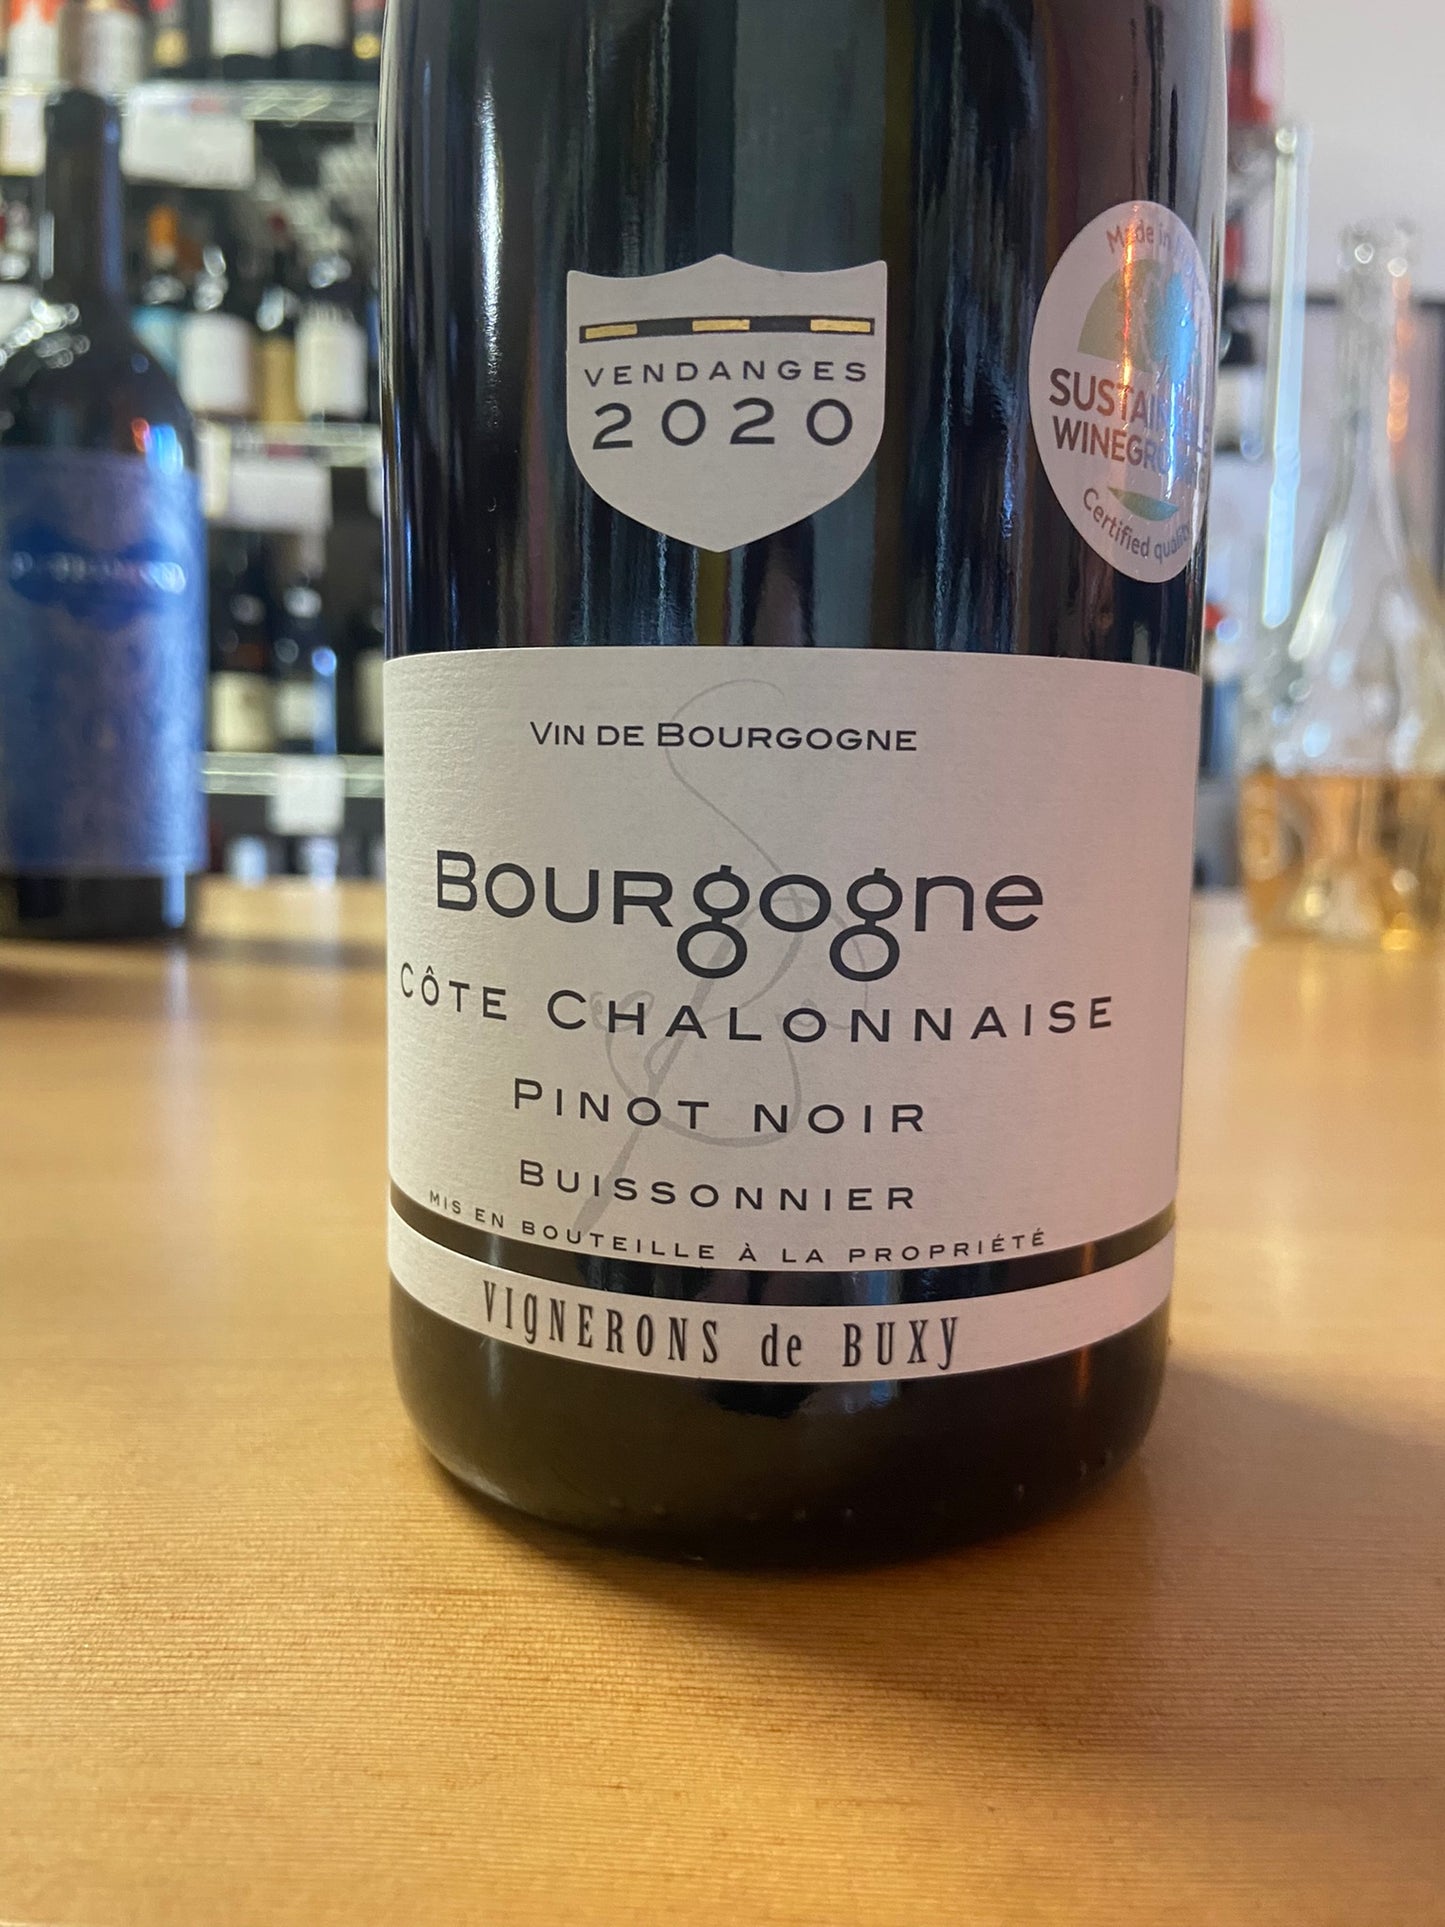 VIGNERONS DE BUXY 2020 Pinot Noir 'Buissonnier' (Burgundy, France)